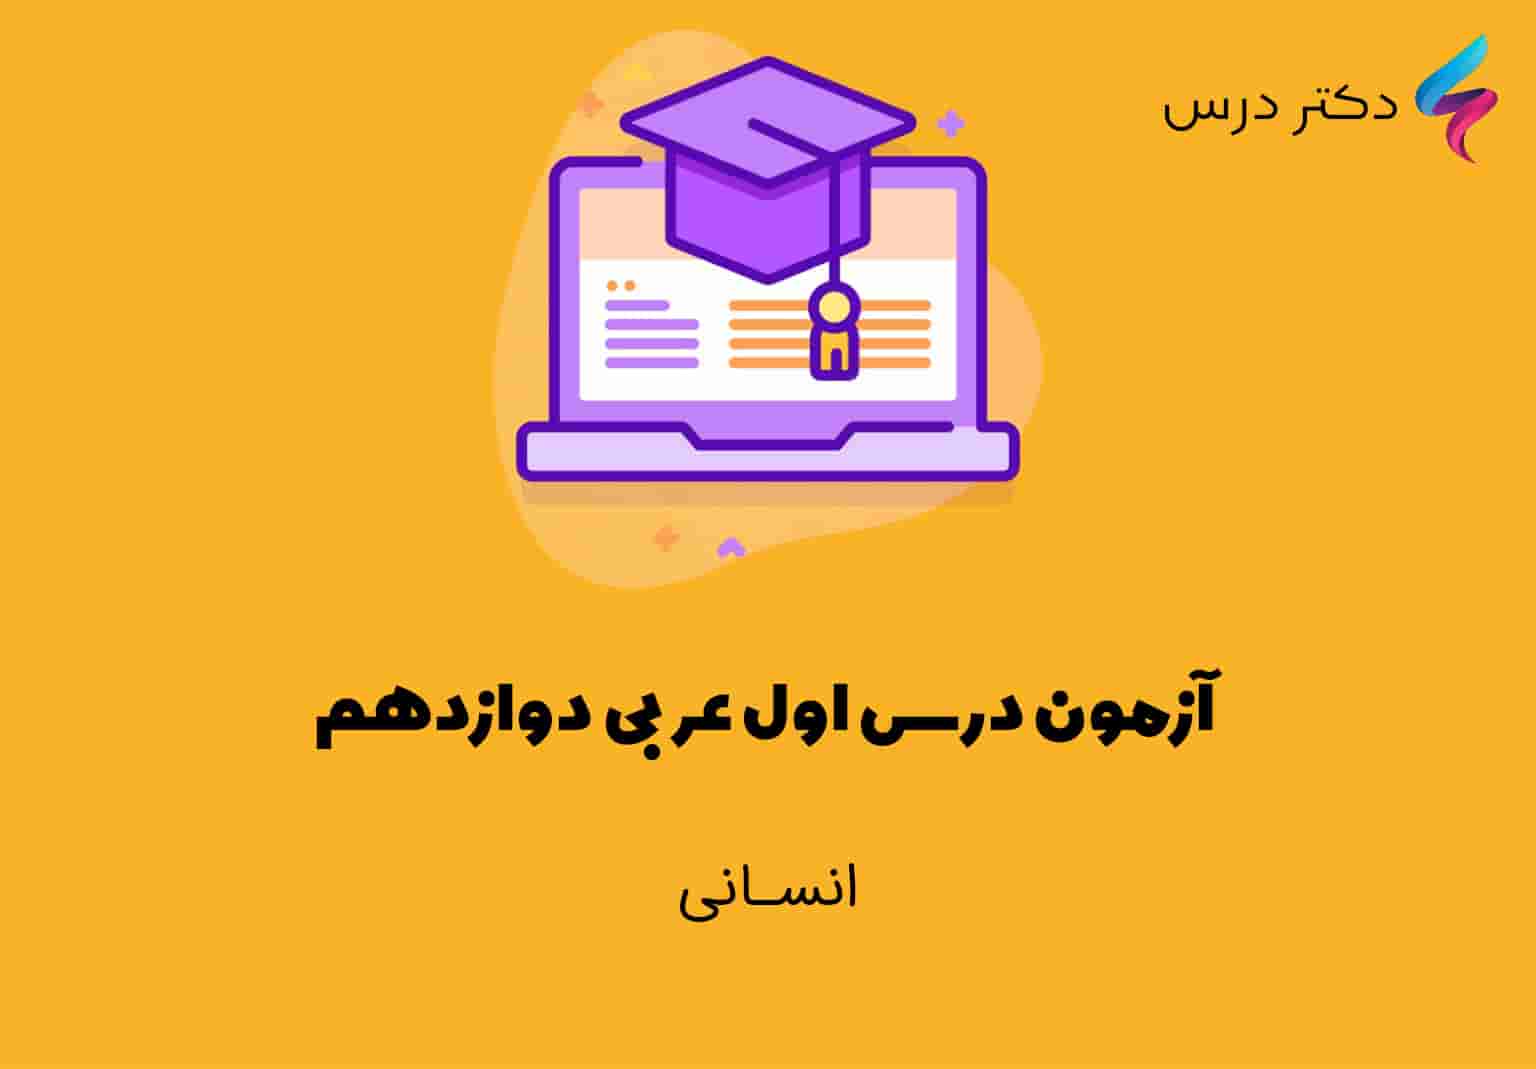 آزمون درس اول عربی دوازدهم انسانی + پاسخ تشریحی